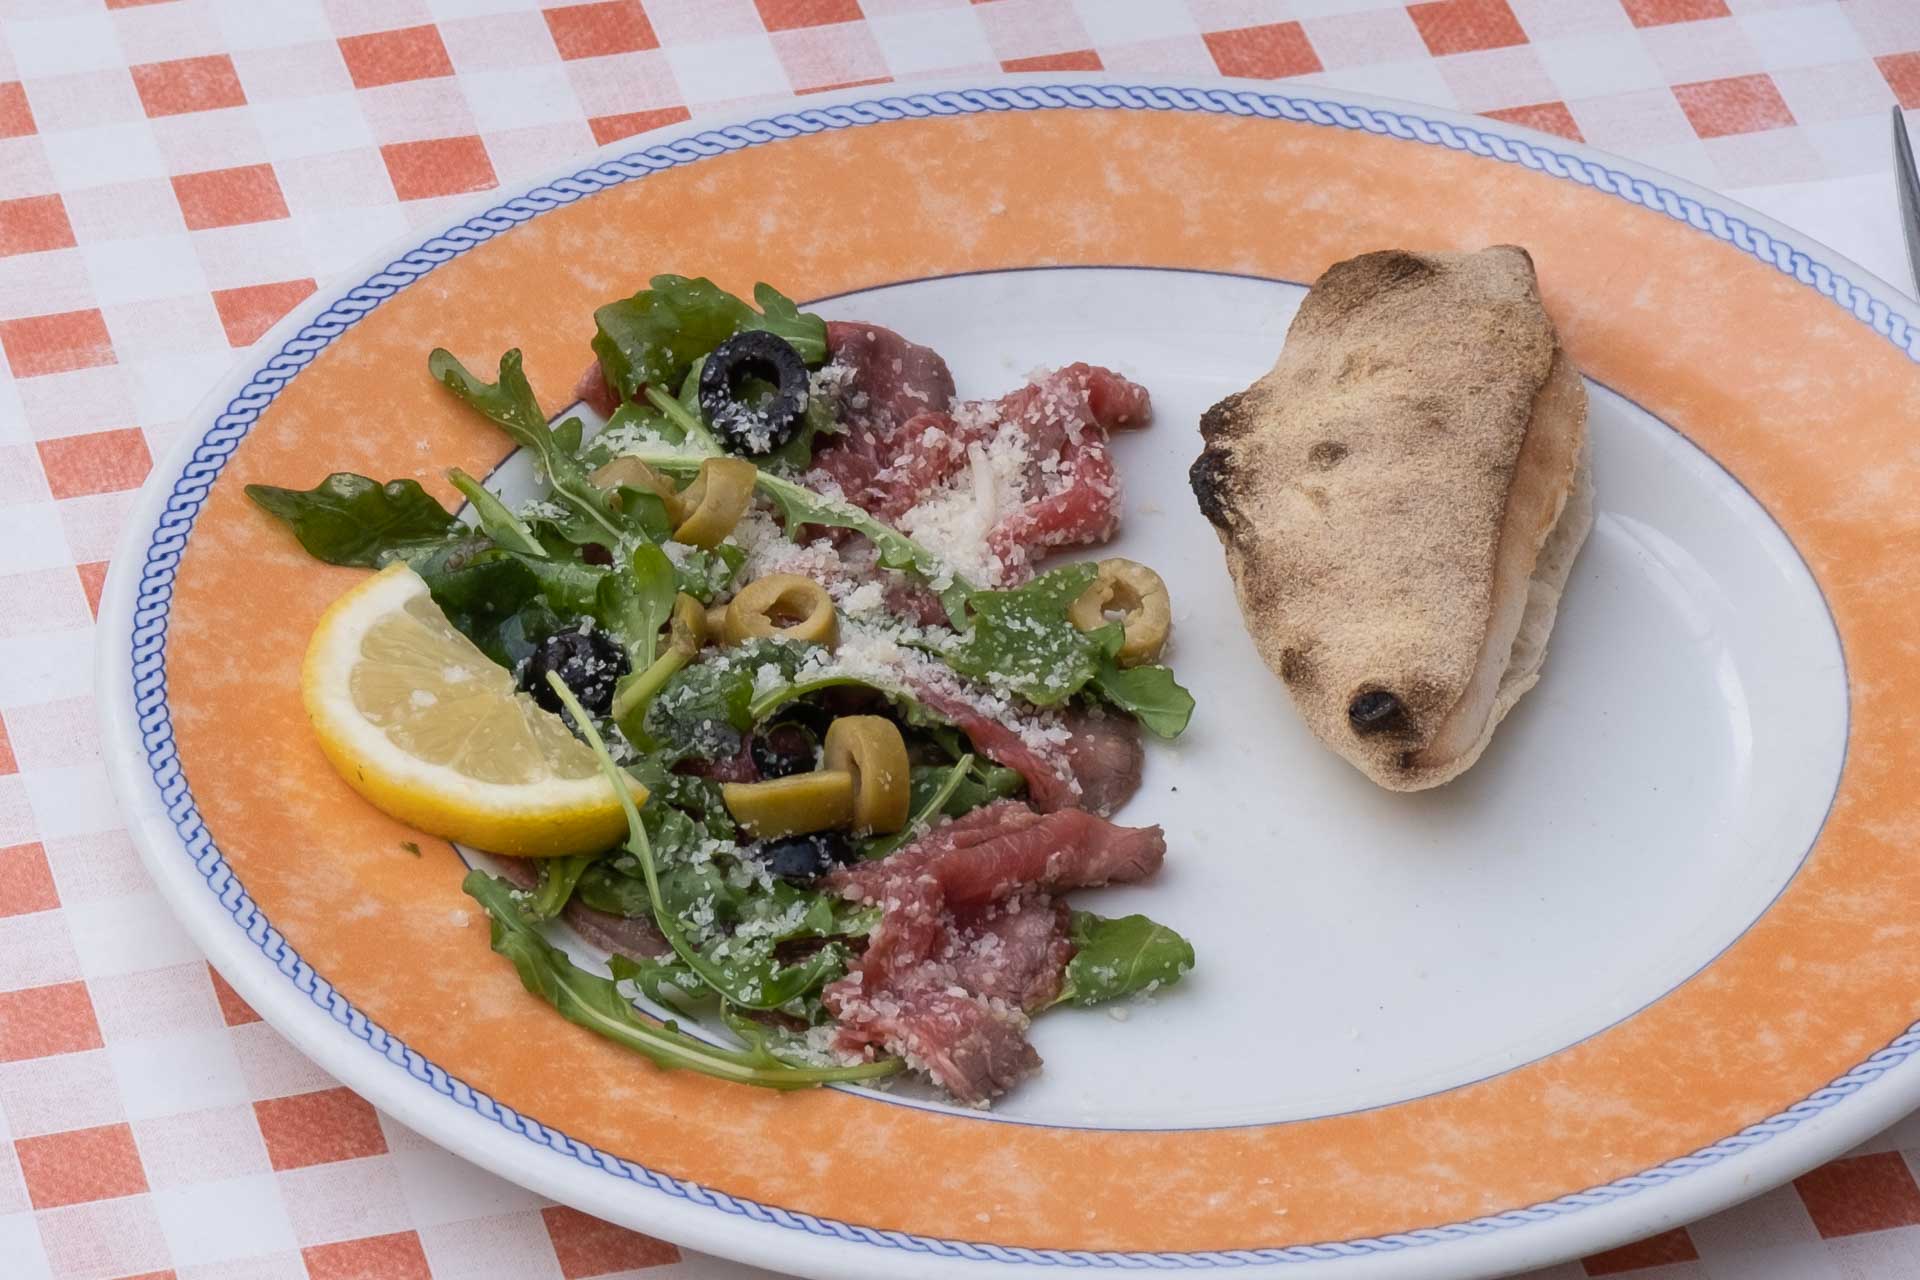 For alvor mørt kød hos Stromboli